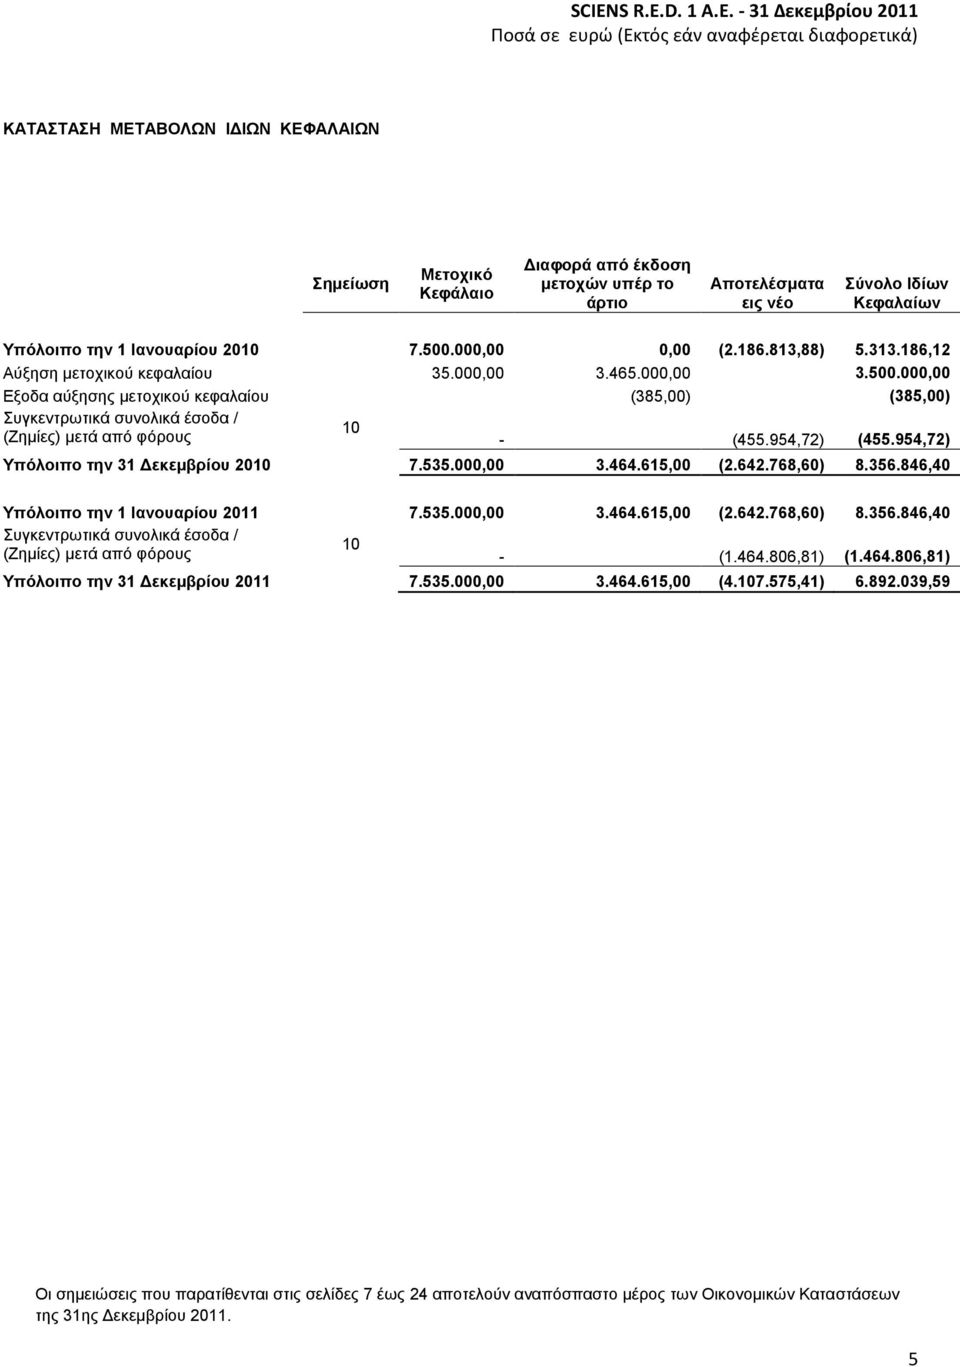 000,00 Εξοδα αύξησης μετοχικού κεφαλαίου (385,00) (385,00) Συγκεντρωτικά συνολικά έσοδα / 10 (Ζημίες) μετά από φόρους - (455.954,72) (455.954,72) Υπόλοιπο την 31 Δεκεμβρίου 2010 7.535.000,00 3.464.